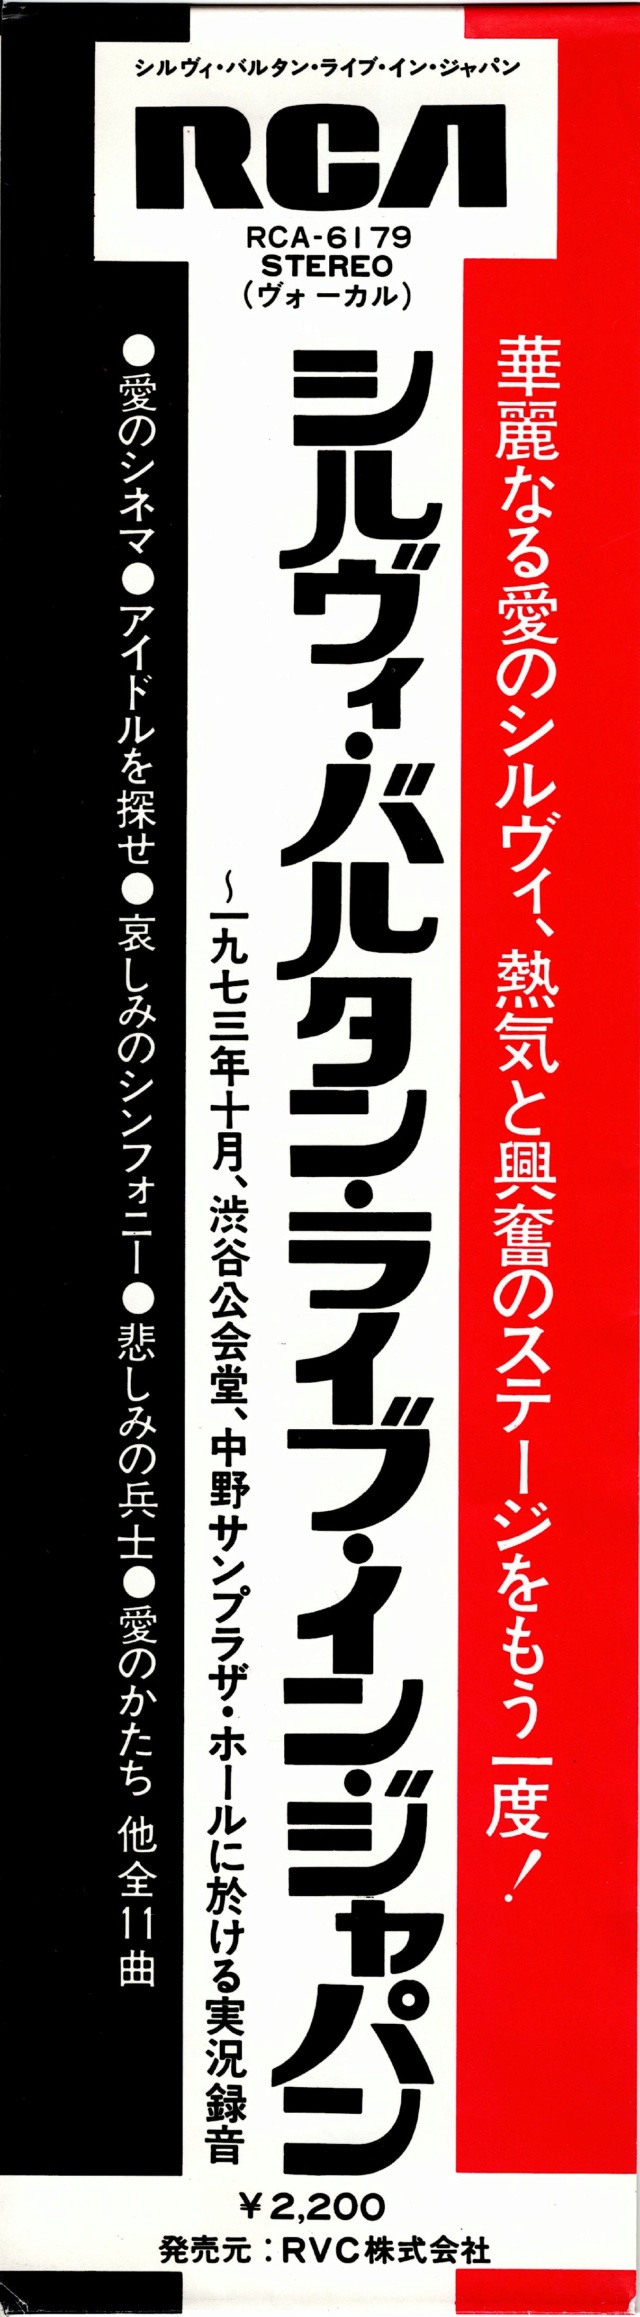 Discographie Japonaise - 3ème partie -  (33 T ORIGINAUX)  - Page 18 Jpn_2490